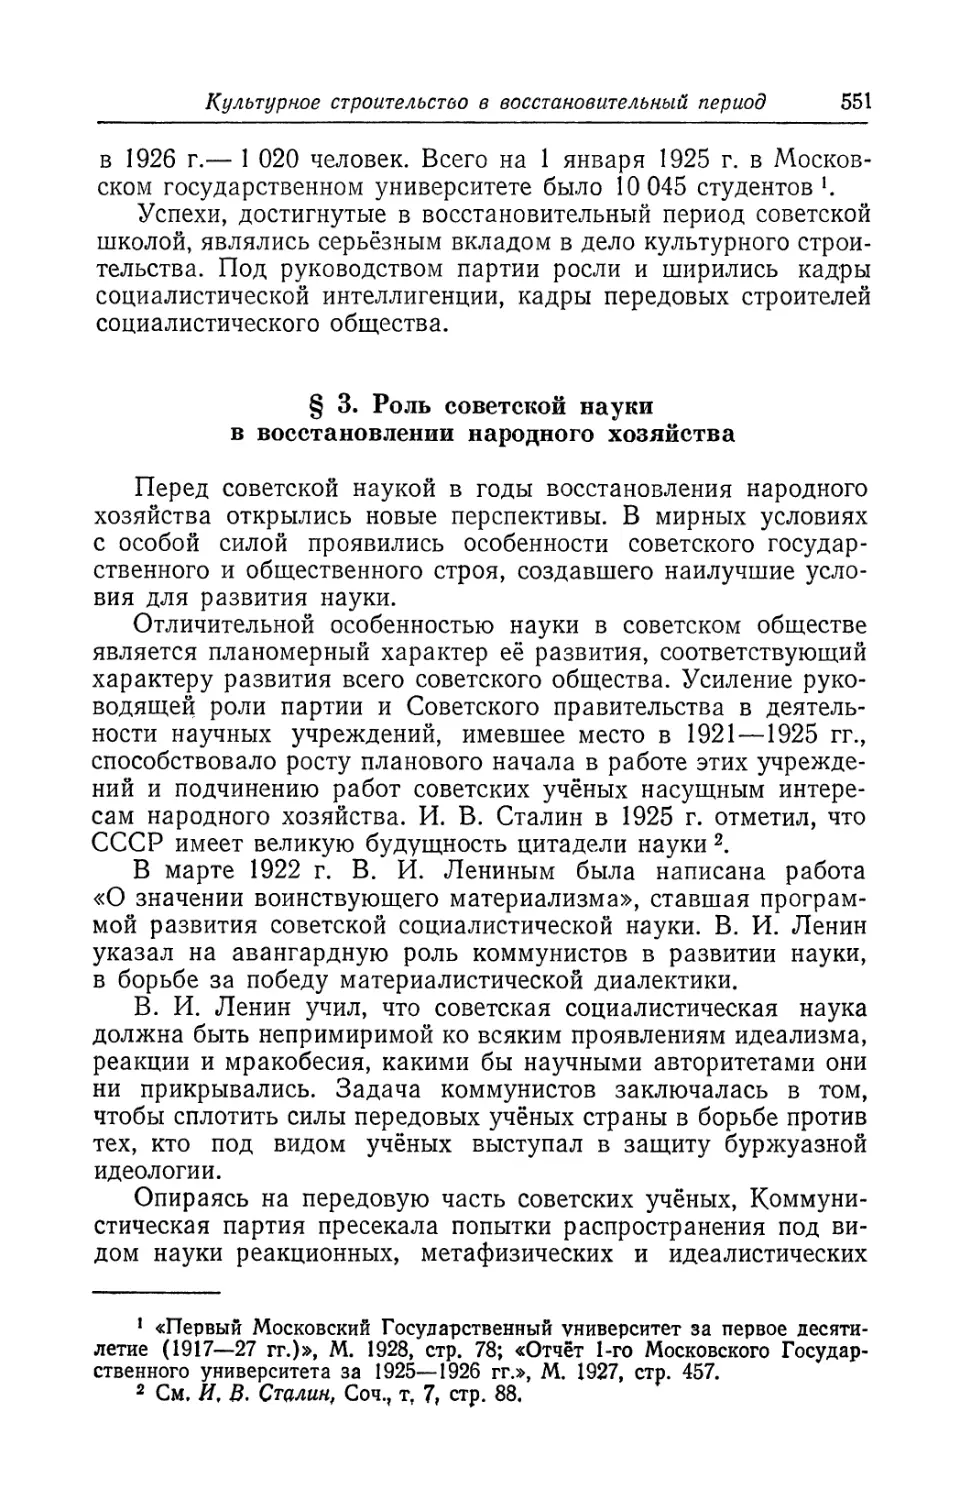 § 3. Роль советской науки в восстановлении народного хозяйства